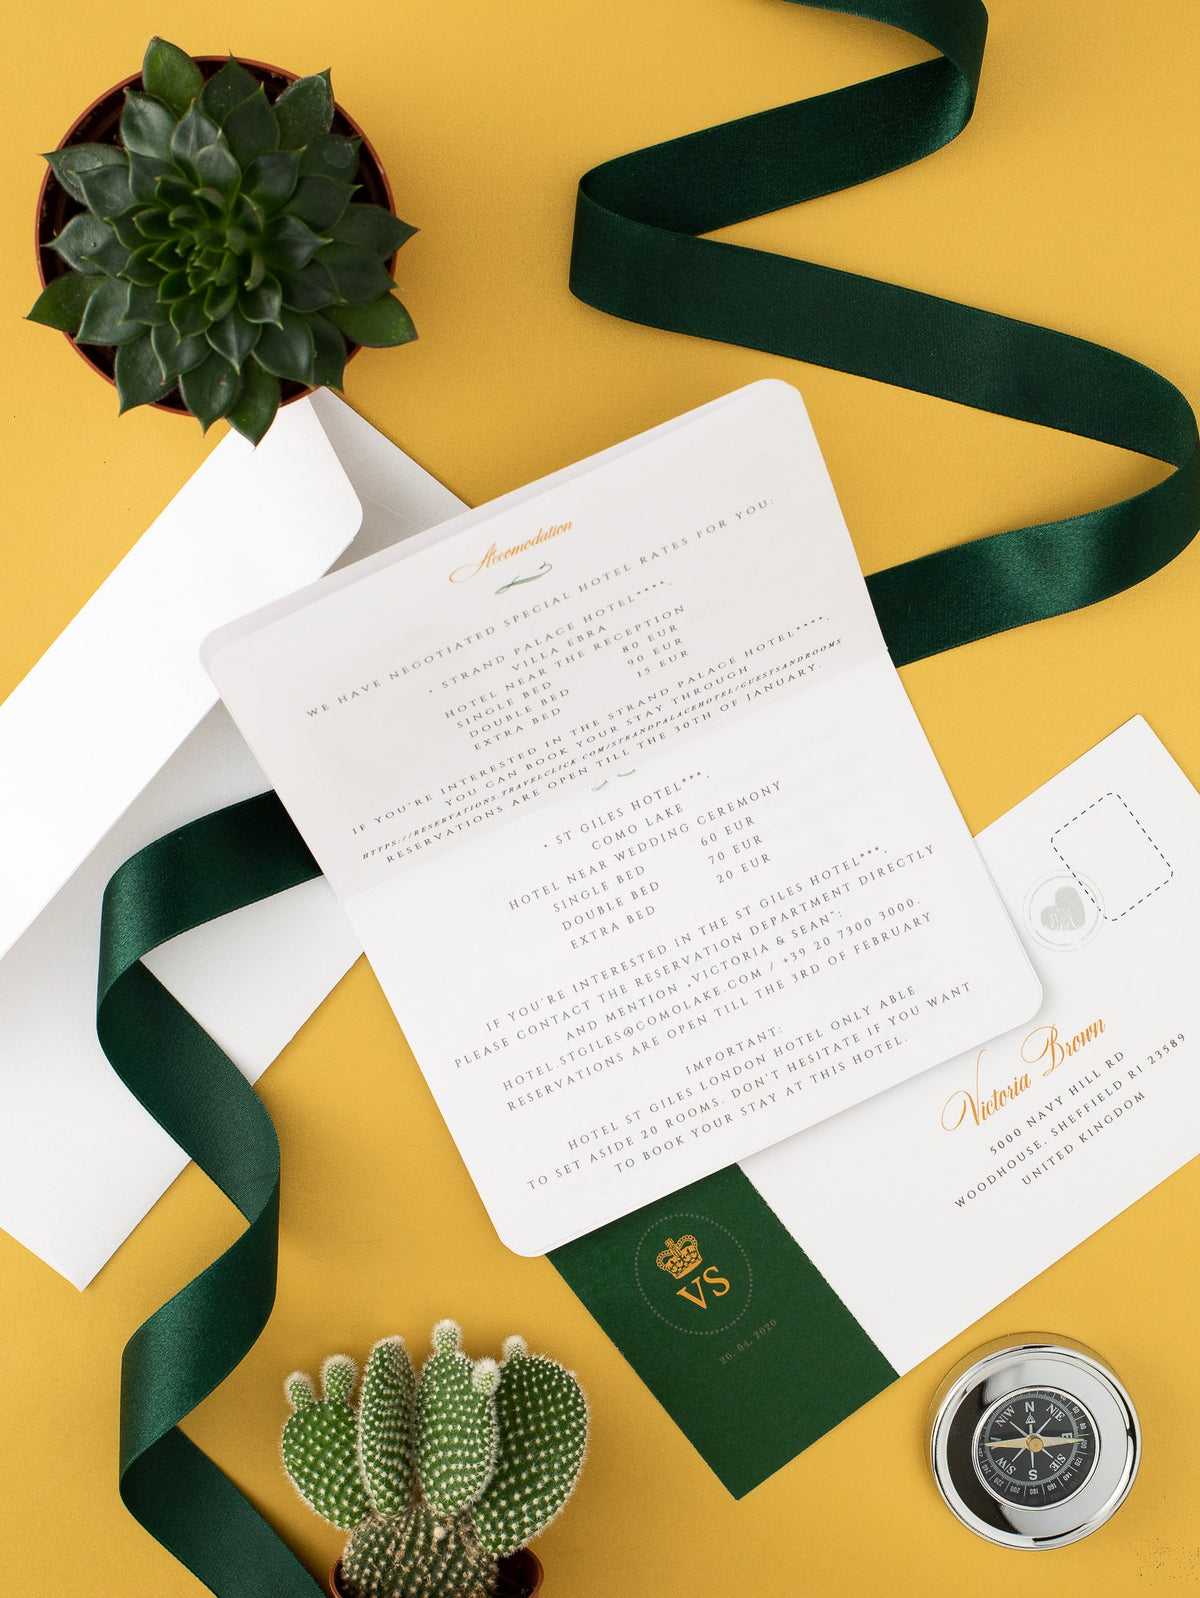 Invitación de boda con pasaporte verde de México con lámina de oro real